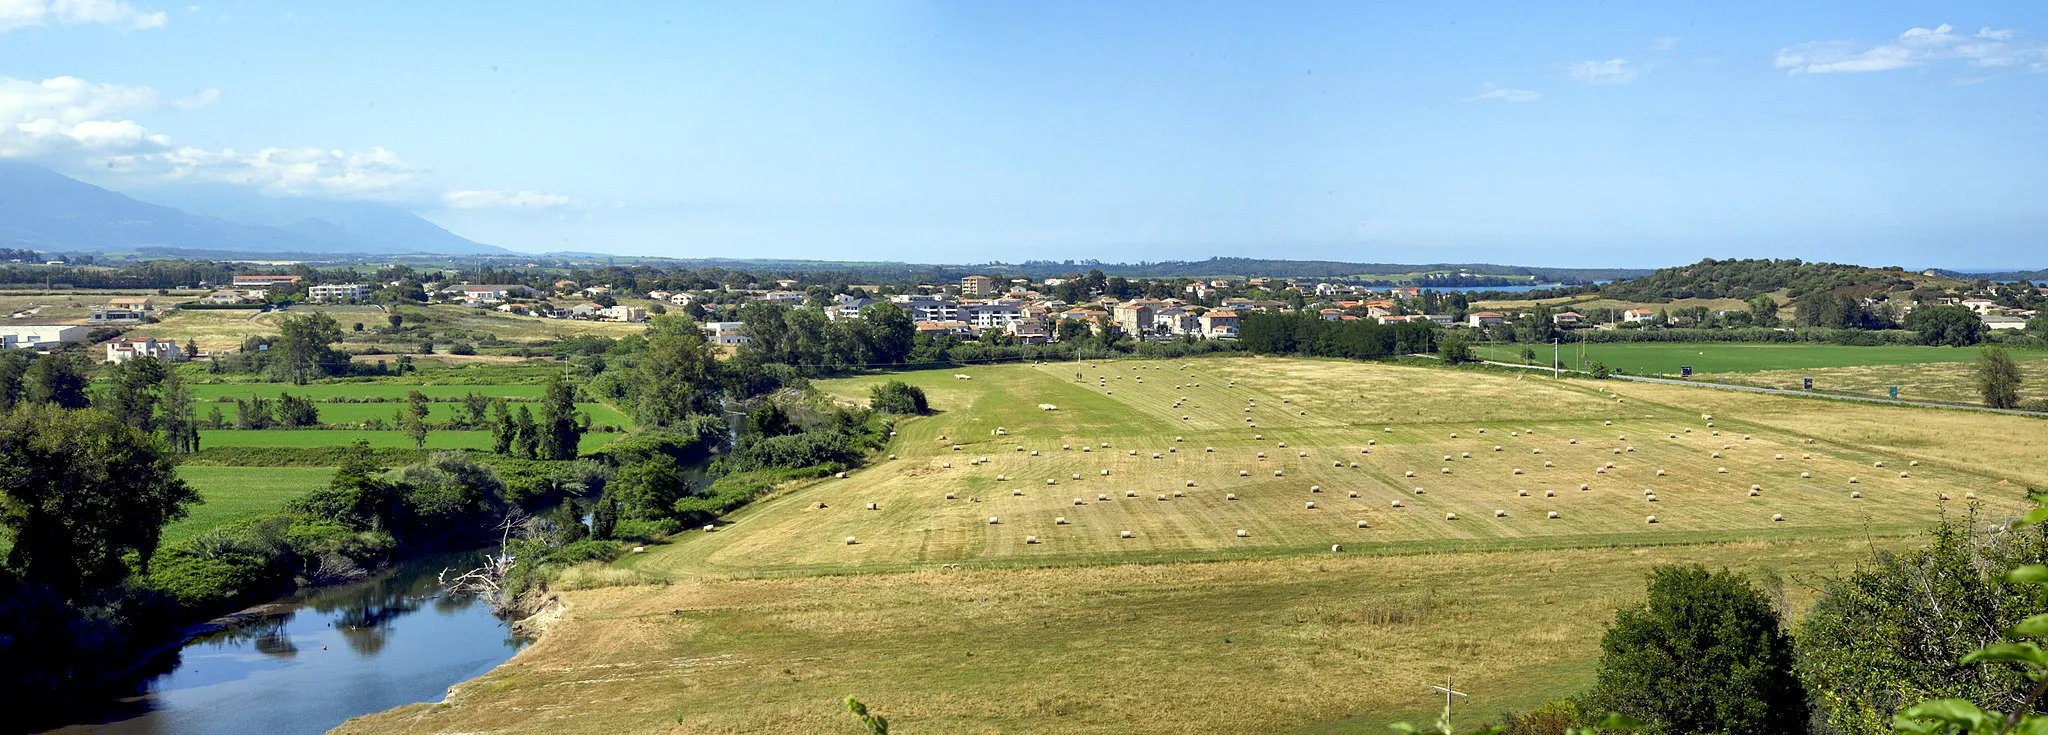 Photo showing: Aléria, Plaine orientale (Haute-Corse) - Panorama de Cateraggio depuis le site antique. À gauche, le fleuve Tavignano